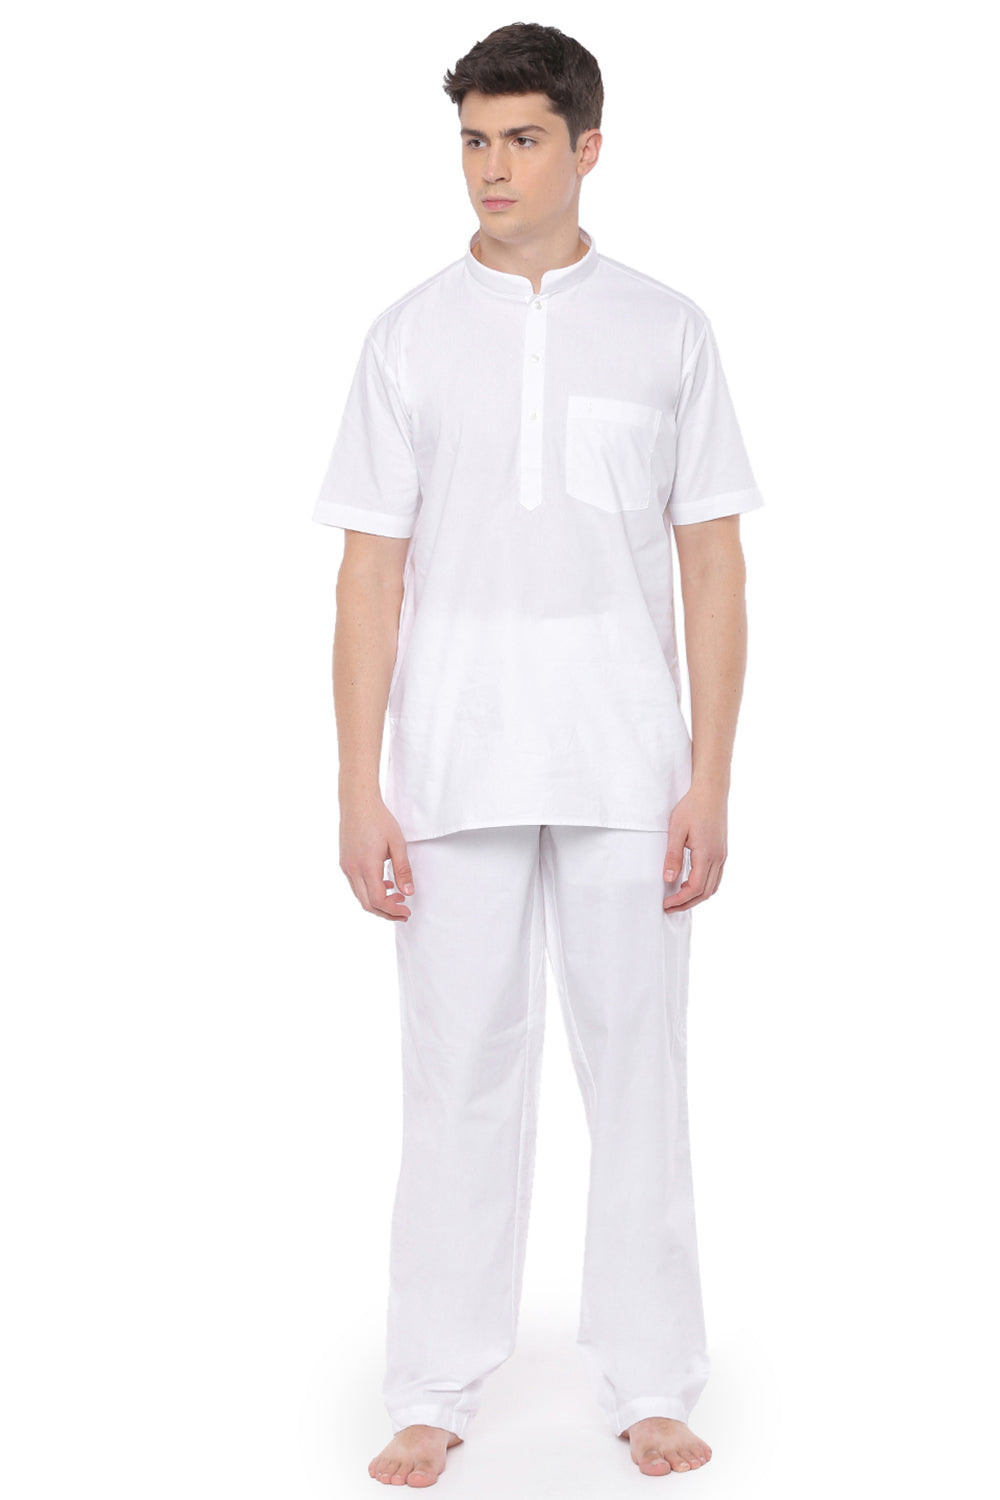 Buy Mens Majestic Cotton Shirt |FullSleeves White Shirt |Ramraj Cotton